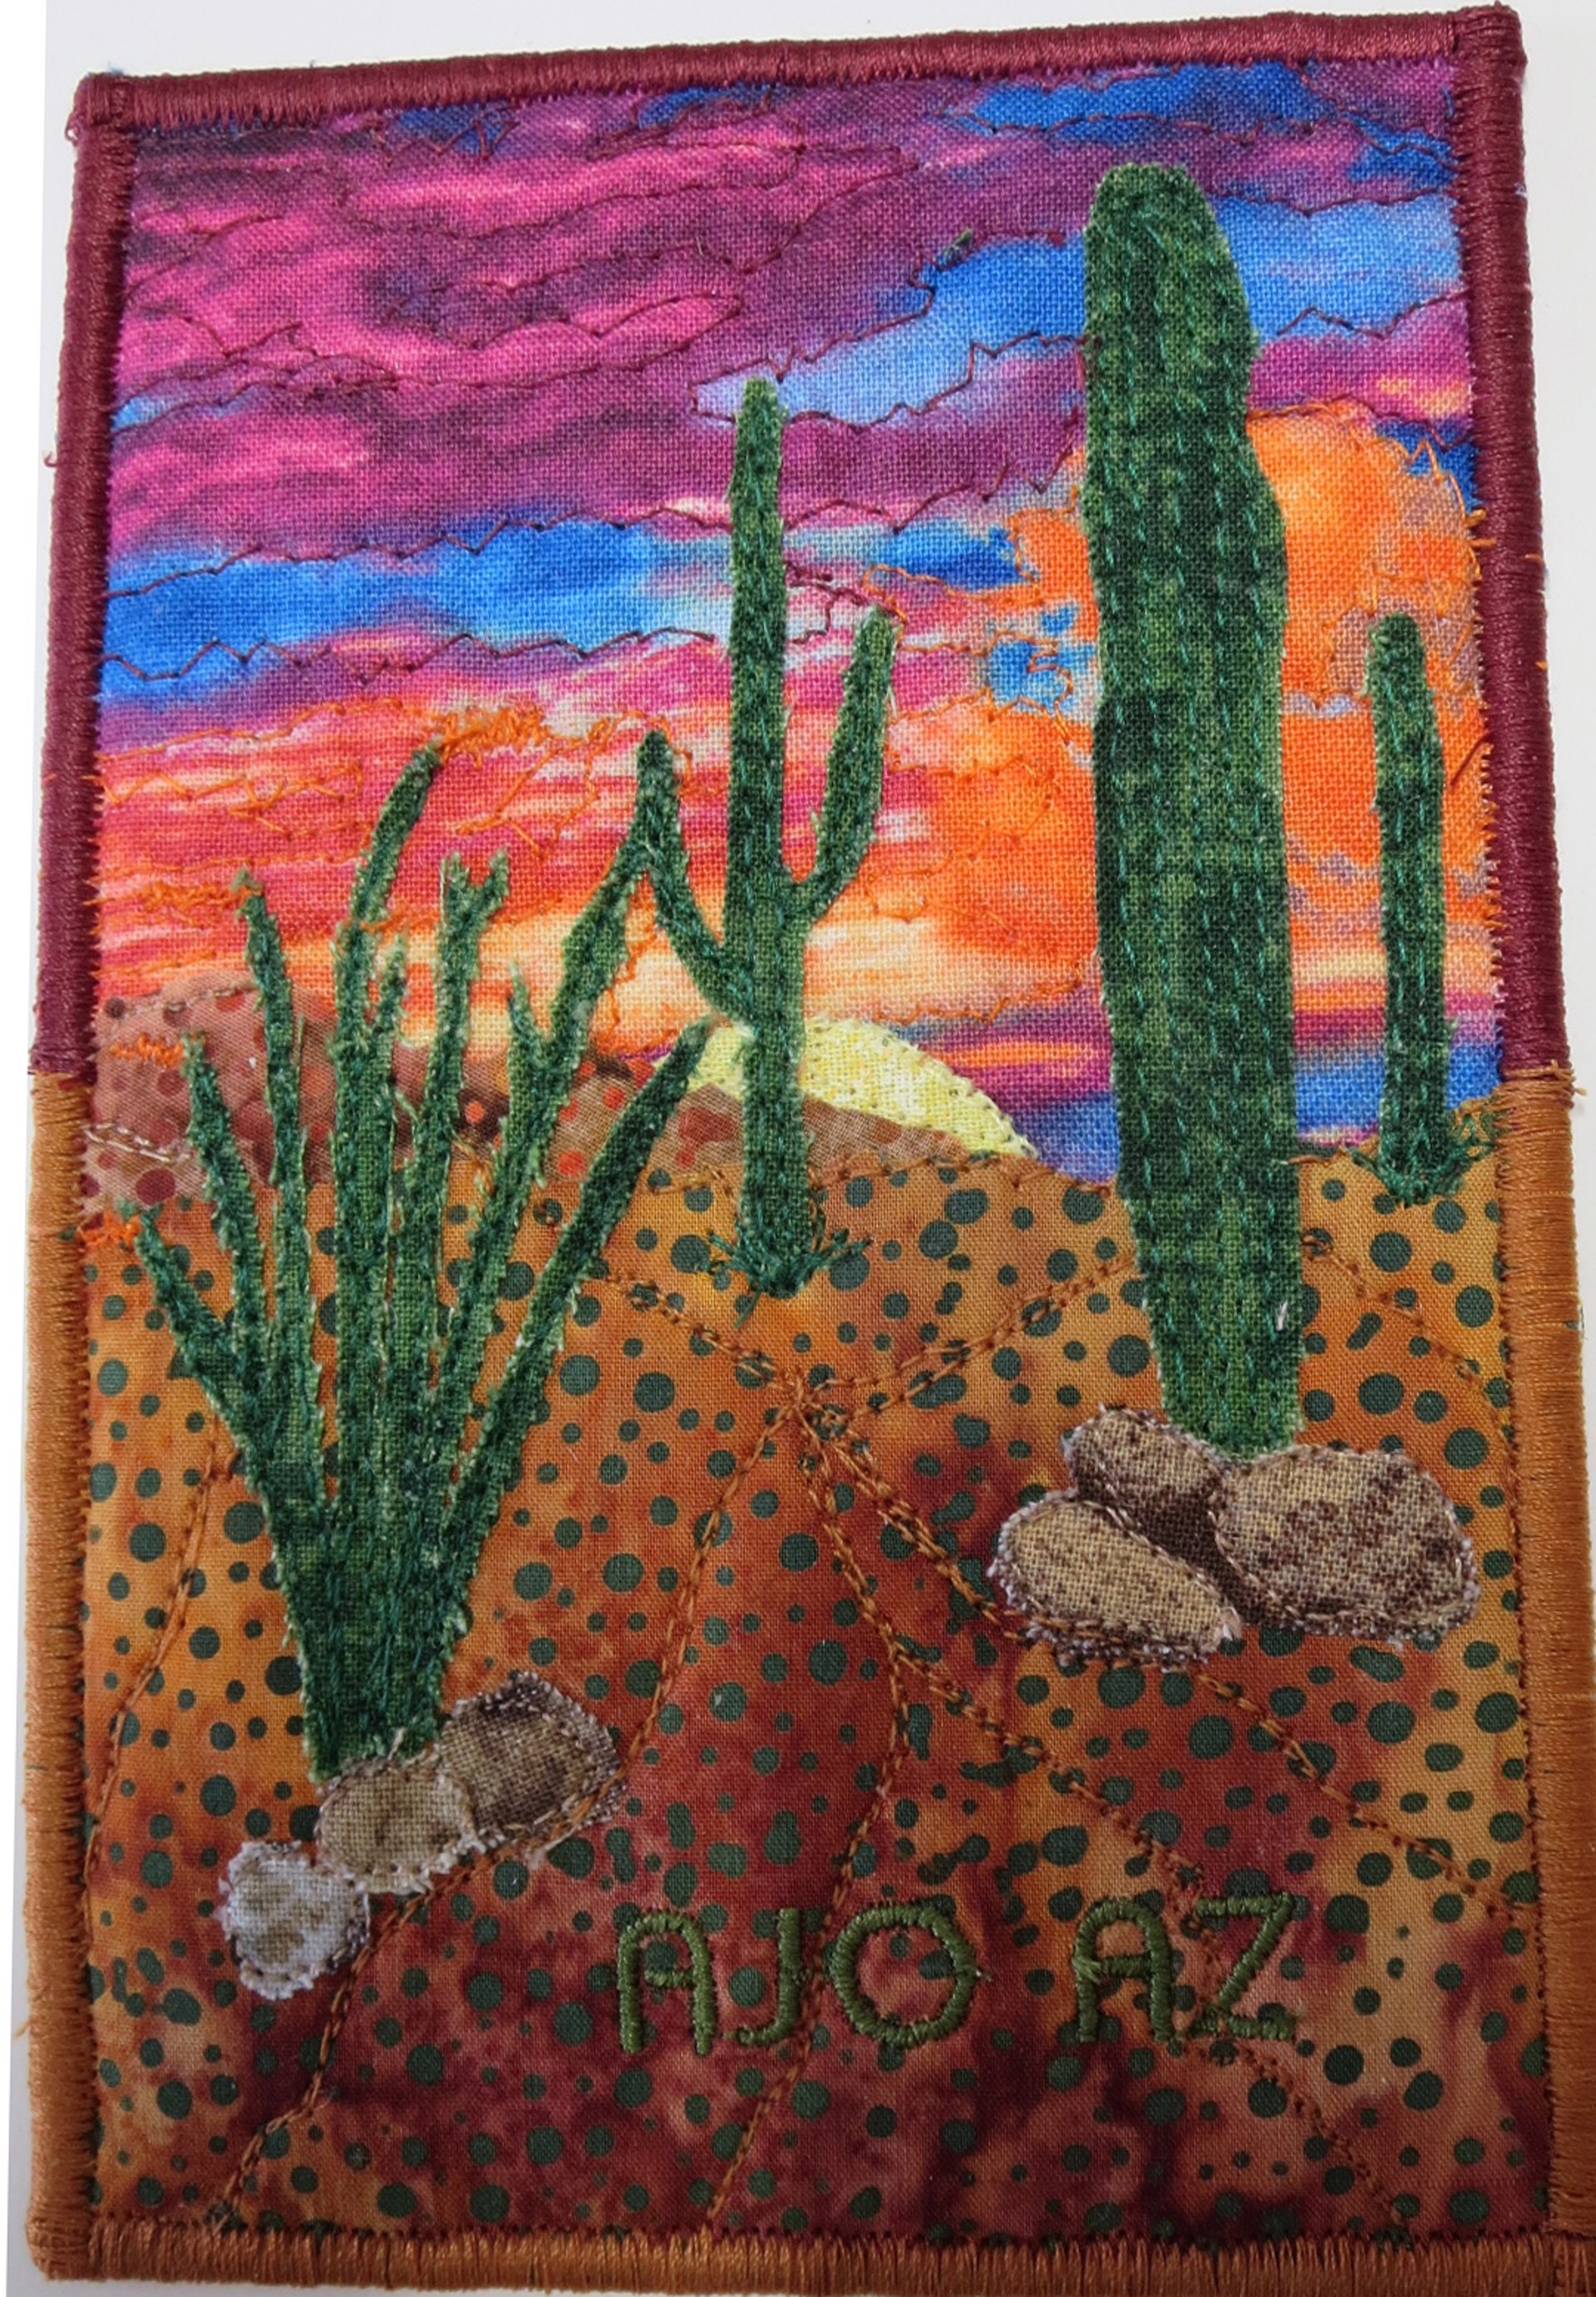 Sonoran Desert Sunset 8 by Cheryl Langer